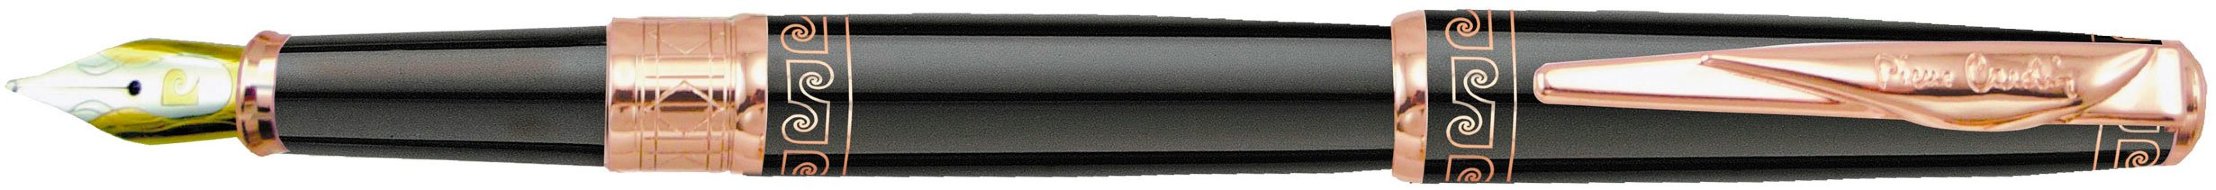 Перьевая ручка Pierre Cardin Secret черный лак, греческий орнамент